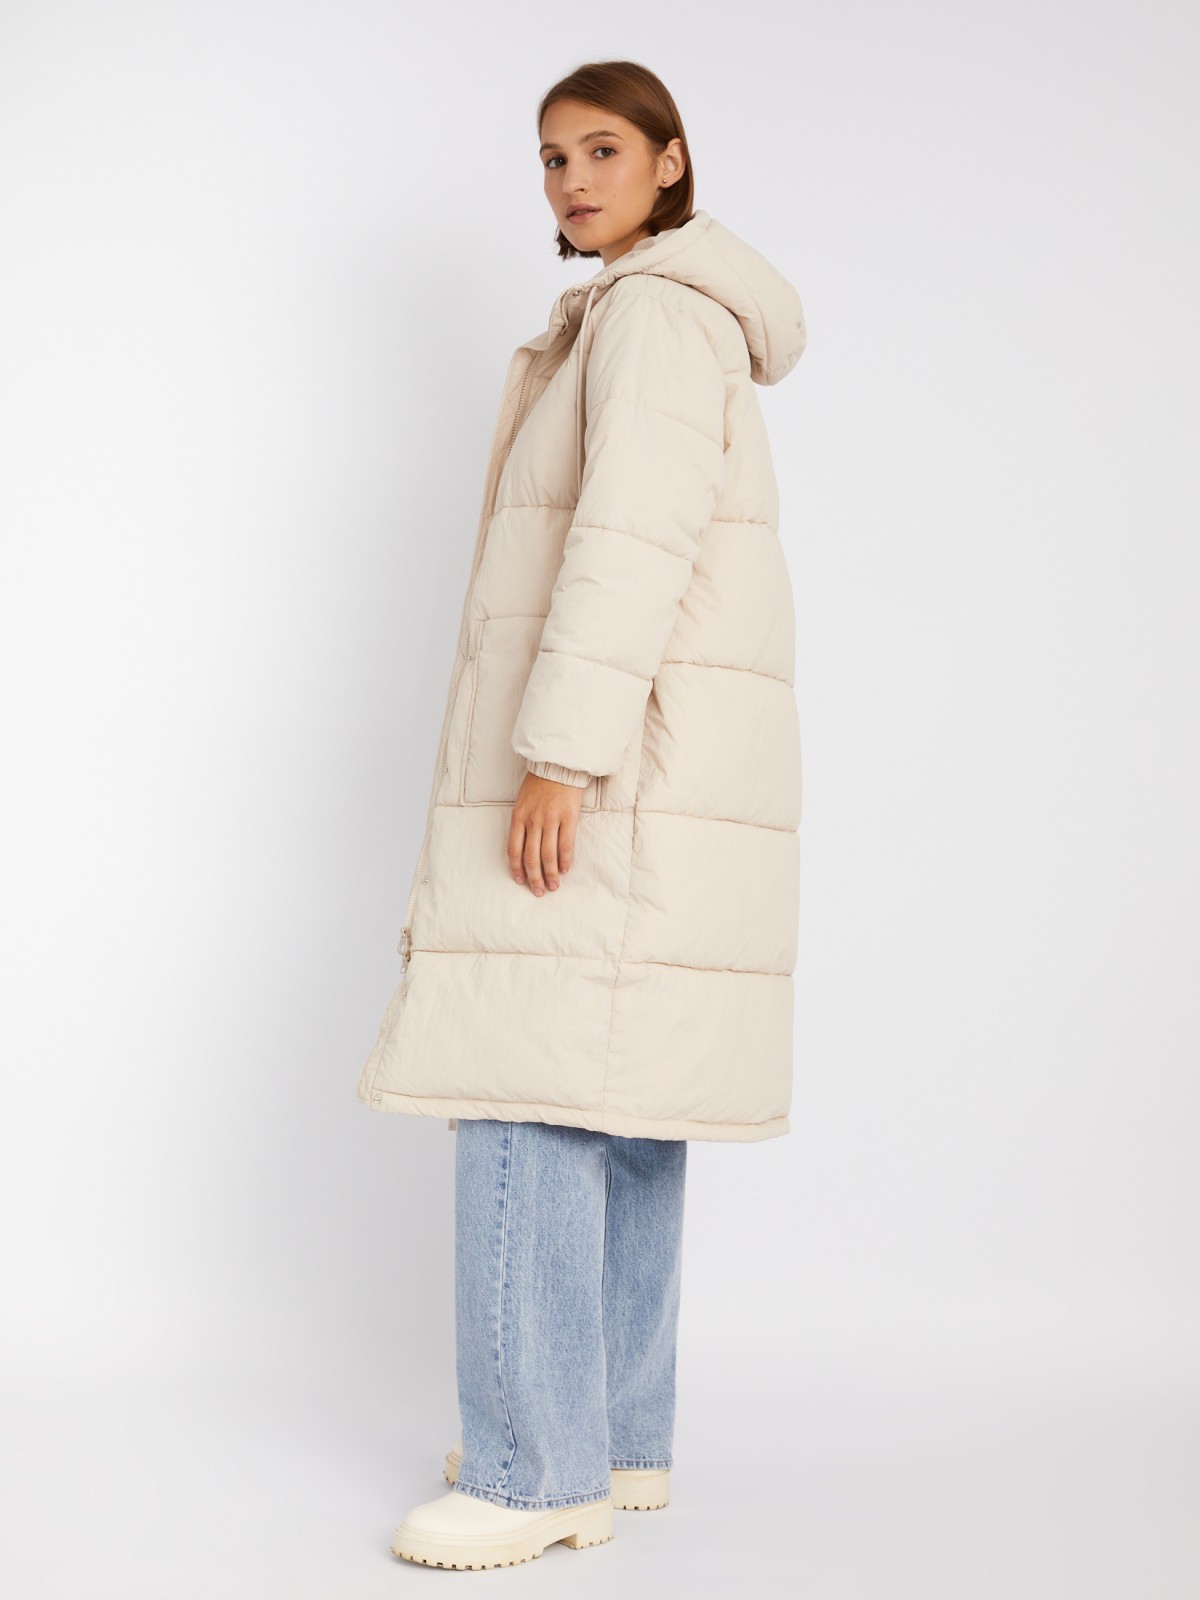 Длинная тёплая стёганая куртка-пальто с капюшоном zolla 023335202084, цвет молоко, размер XS - фото 5